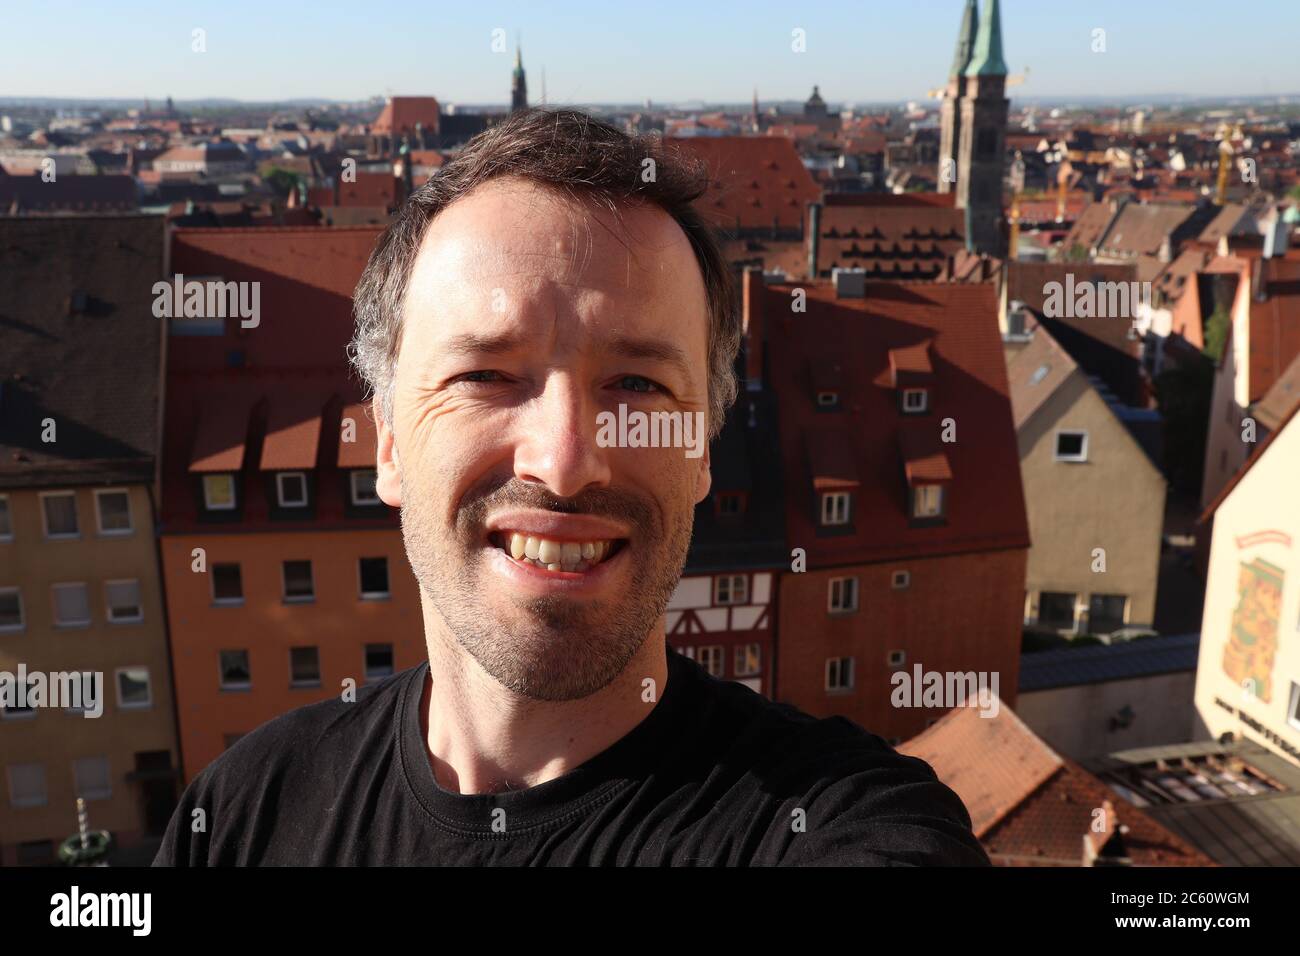 Touristisches selfie in der Nürnberger Altstadt, Deutschland. Reisender selfie. Stockfoto